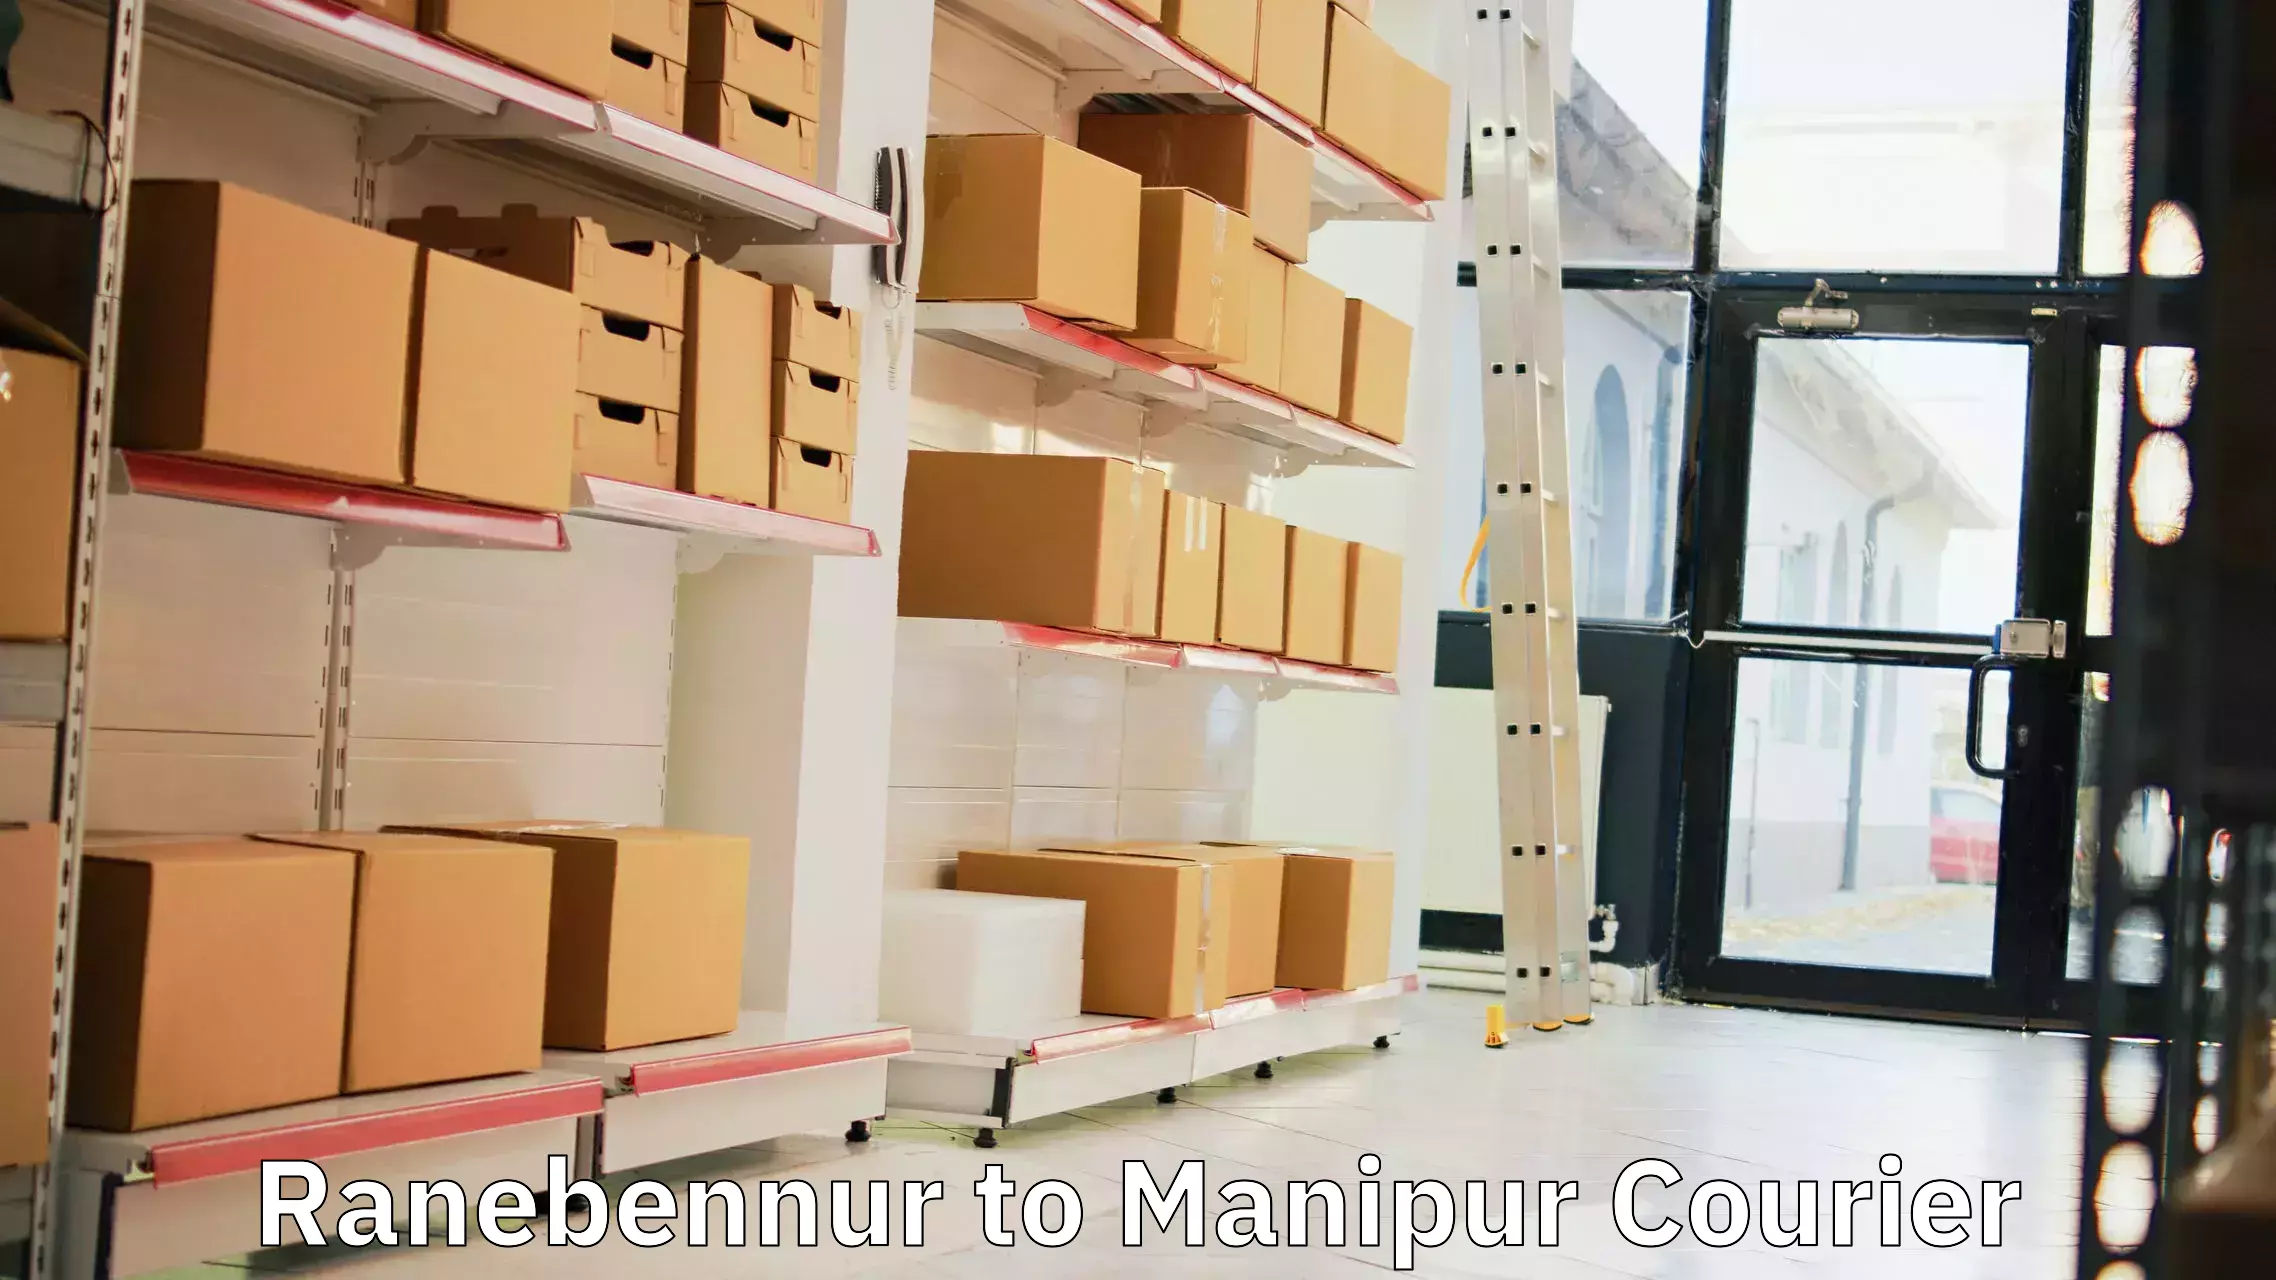 Professional courier handling Ranebennur to Churachandpur